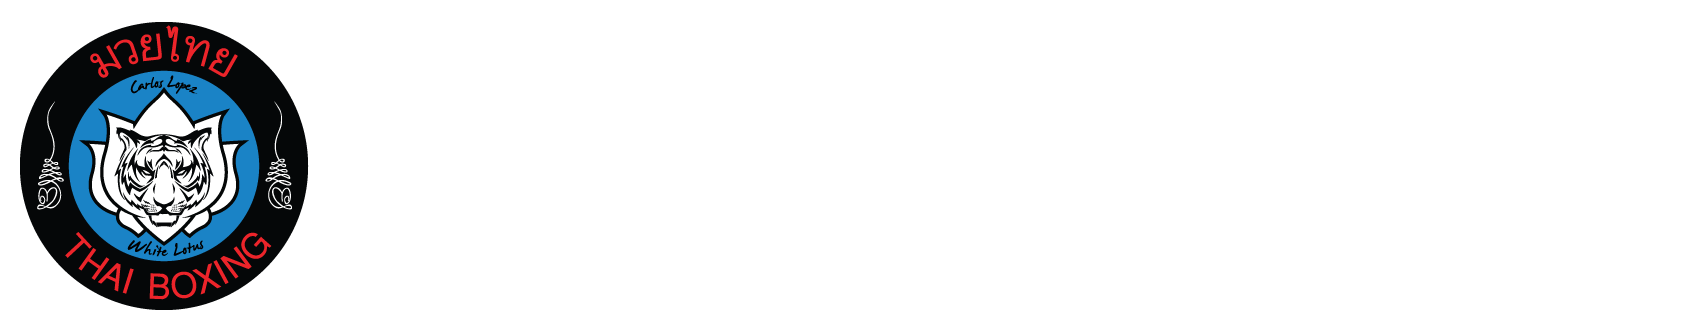 Lotus Thai Boxing Logo